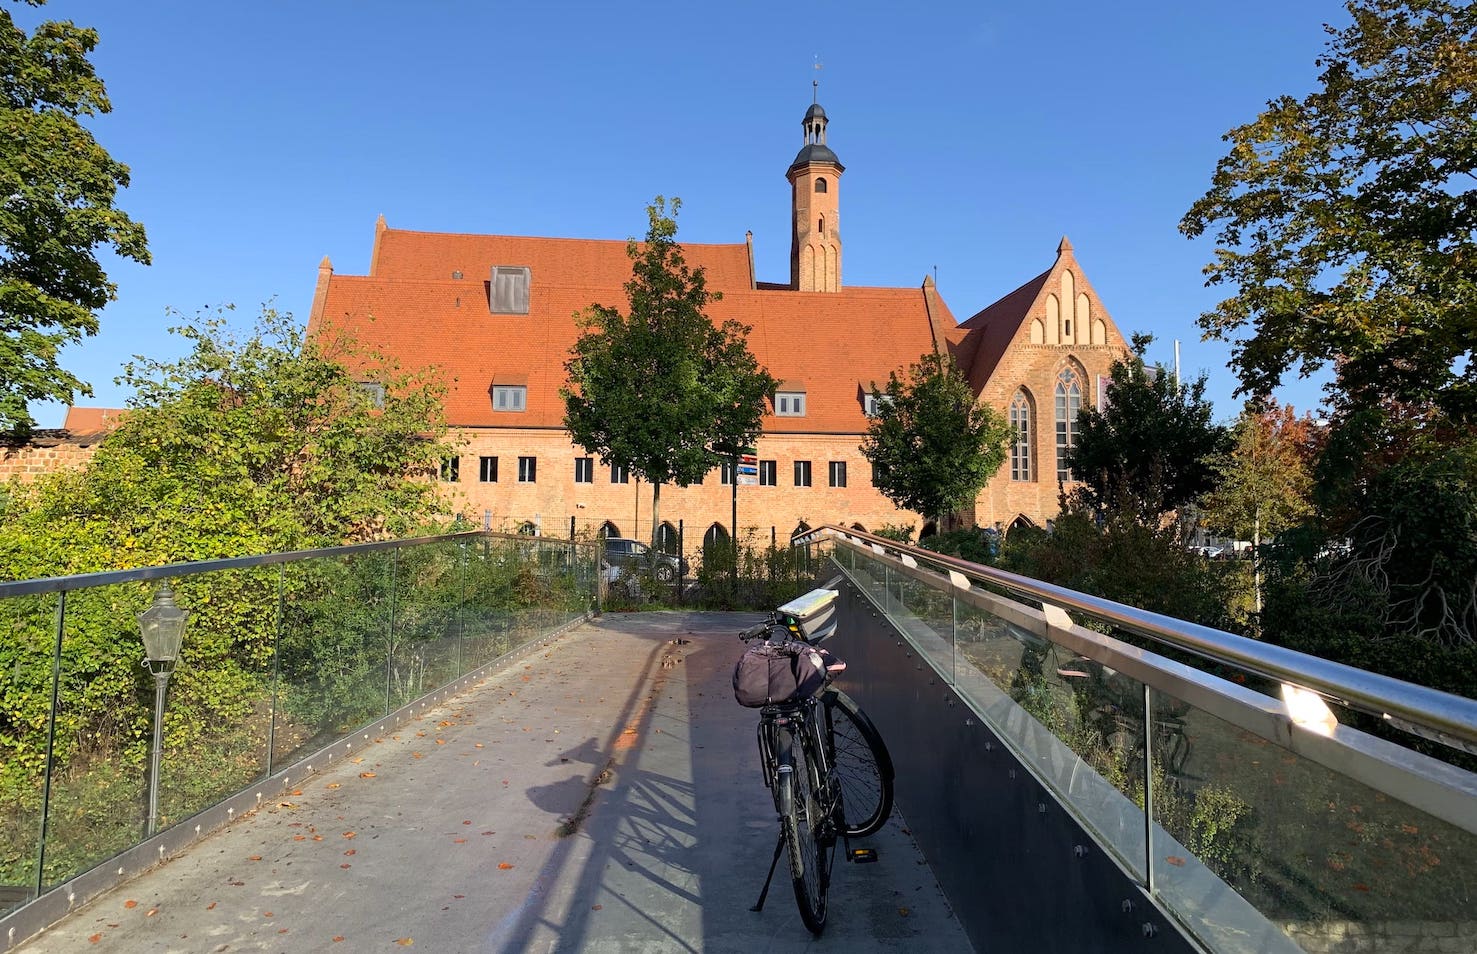 St.Pauli-Kloster in Brandenburg an der Havel, Archäologisches Landesmuseum, Foto von der Fußgängerbrücke Brandenburger Stadtkanal